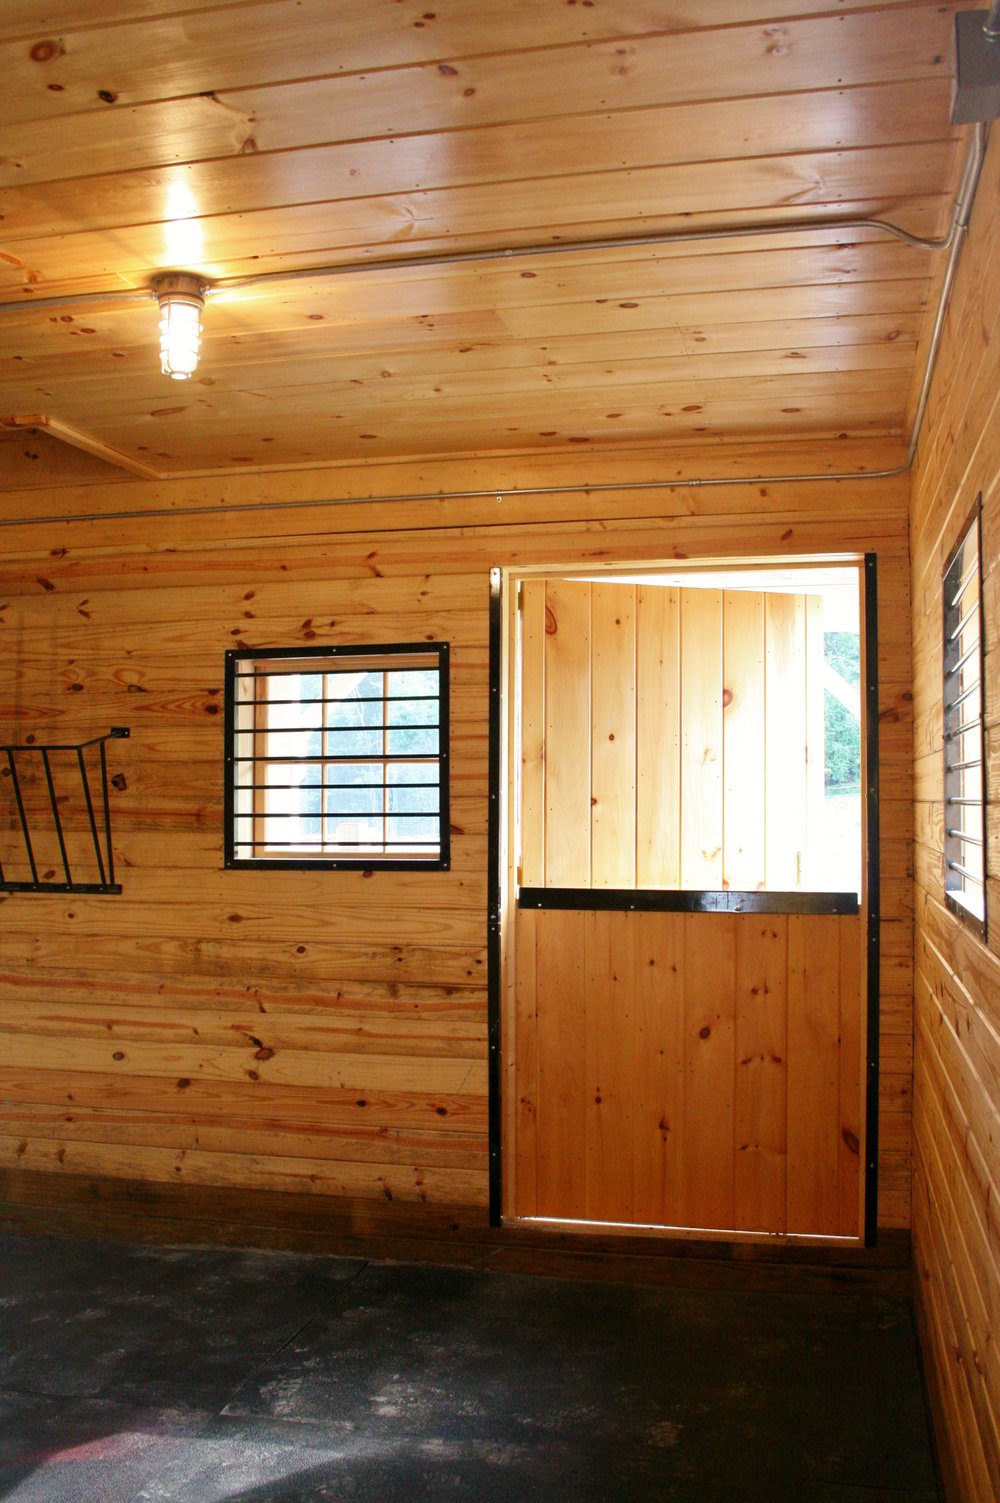 Rubber Stall Mats — Barn Depot